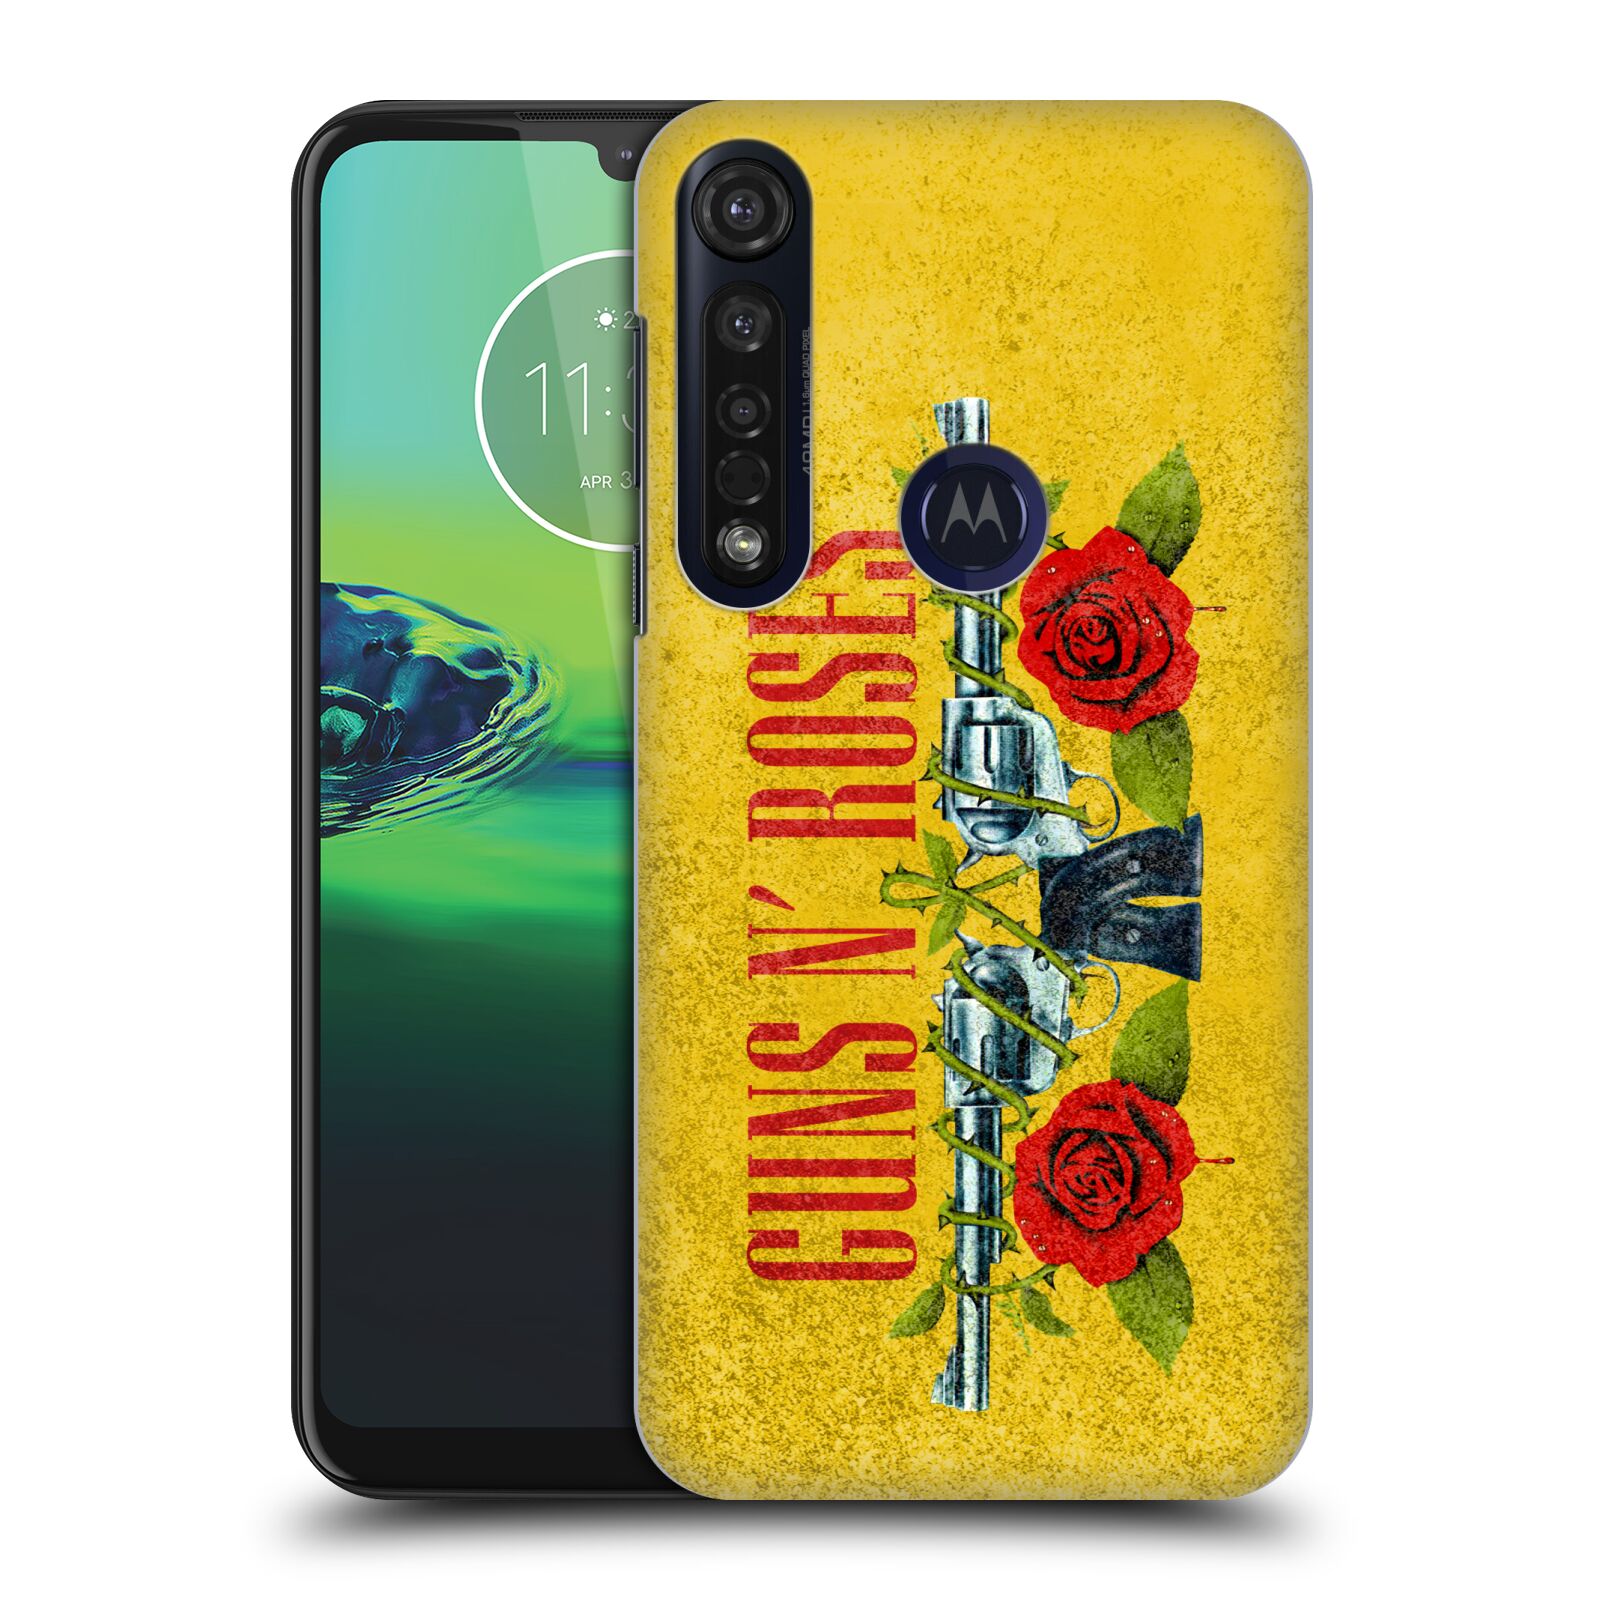 Pouzdro na mobil Motorola Moto G8 PLUS - HEAD CASE - hudební skupina Guns N Roses pistole a růže žluté pozadí